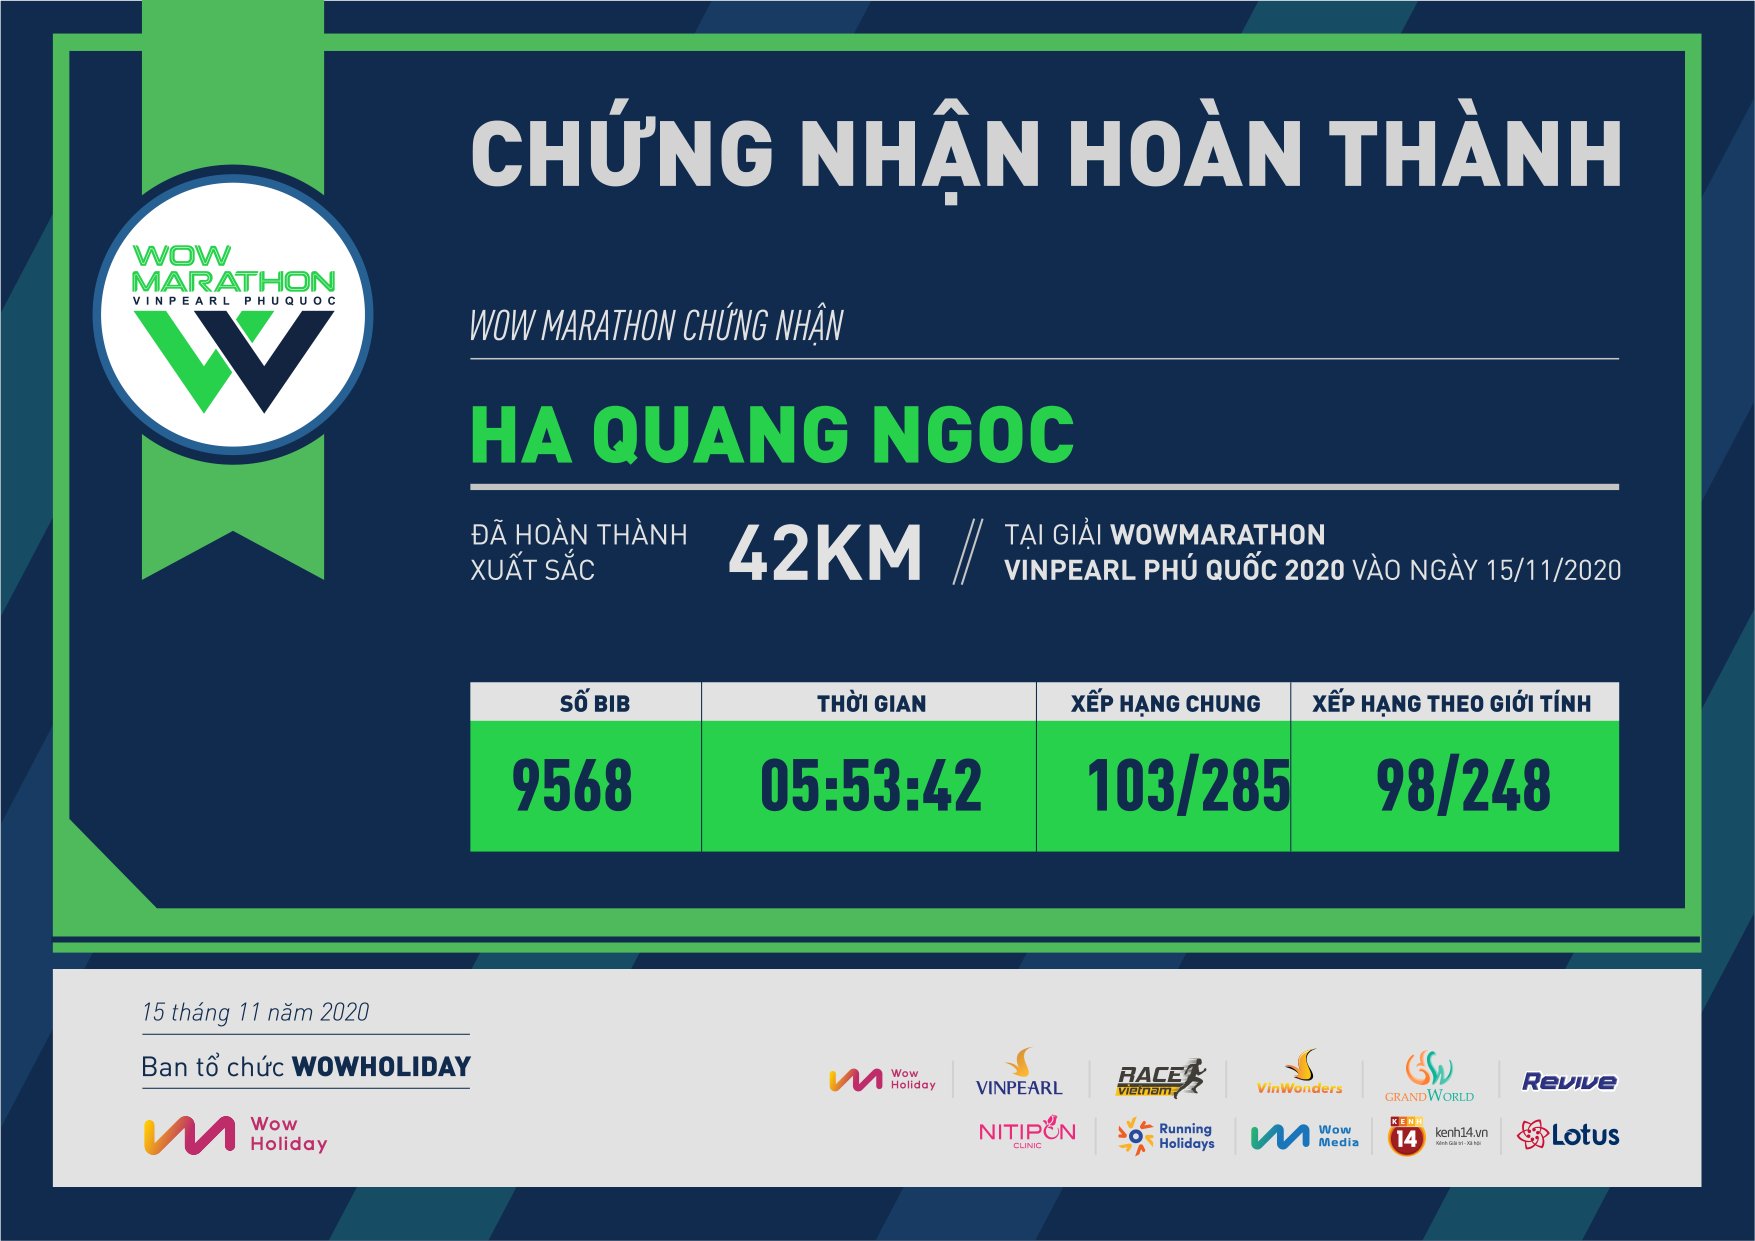 9568 - Ha Quang Ngoc